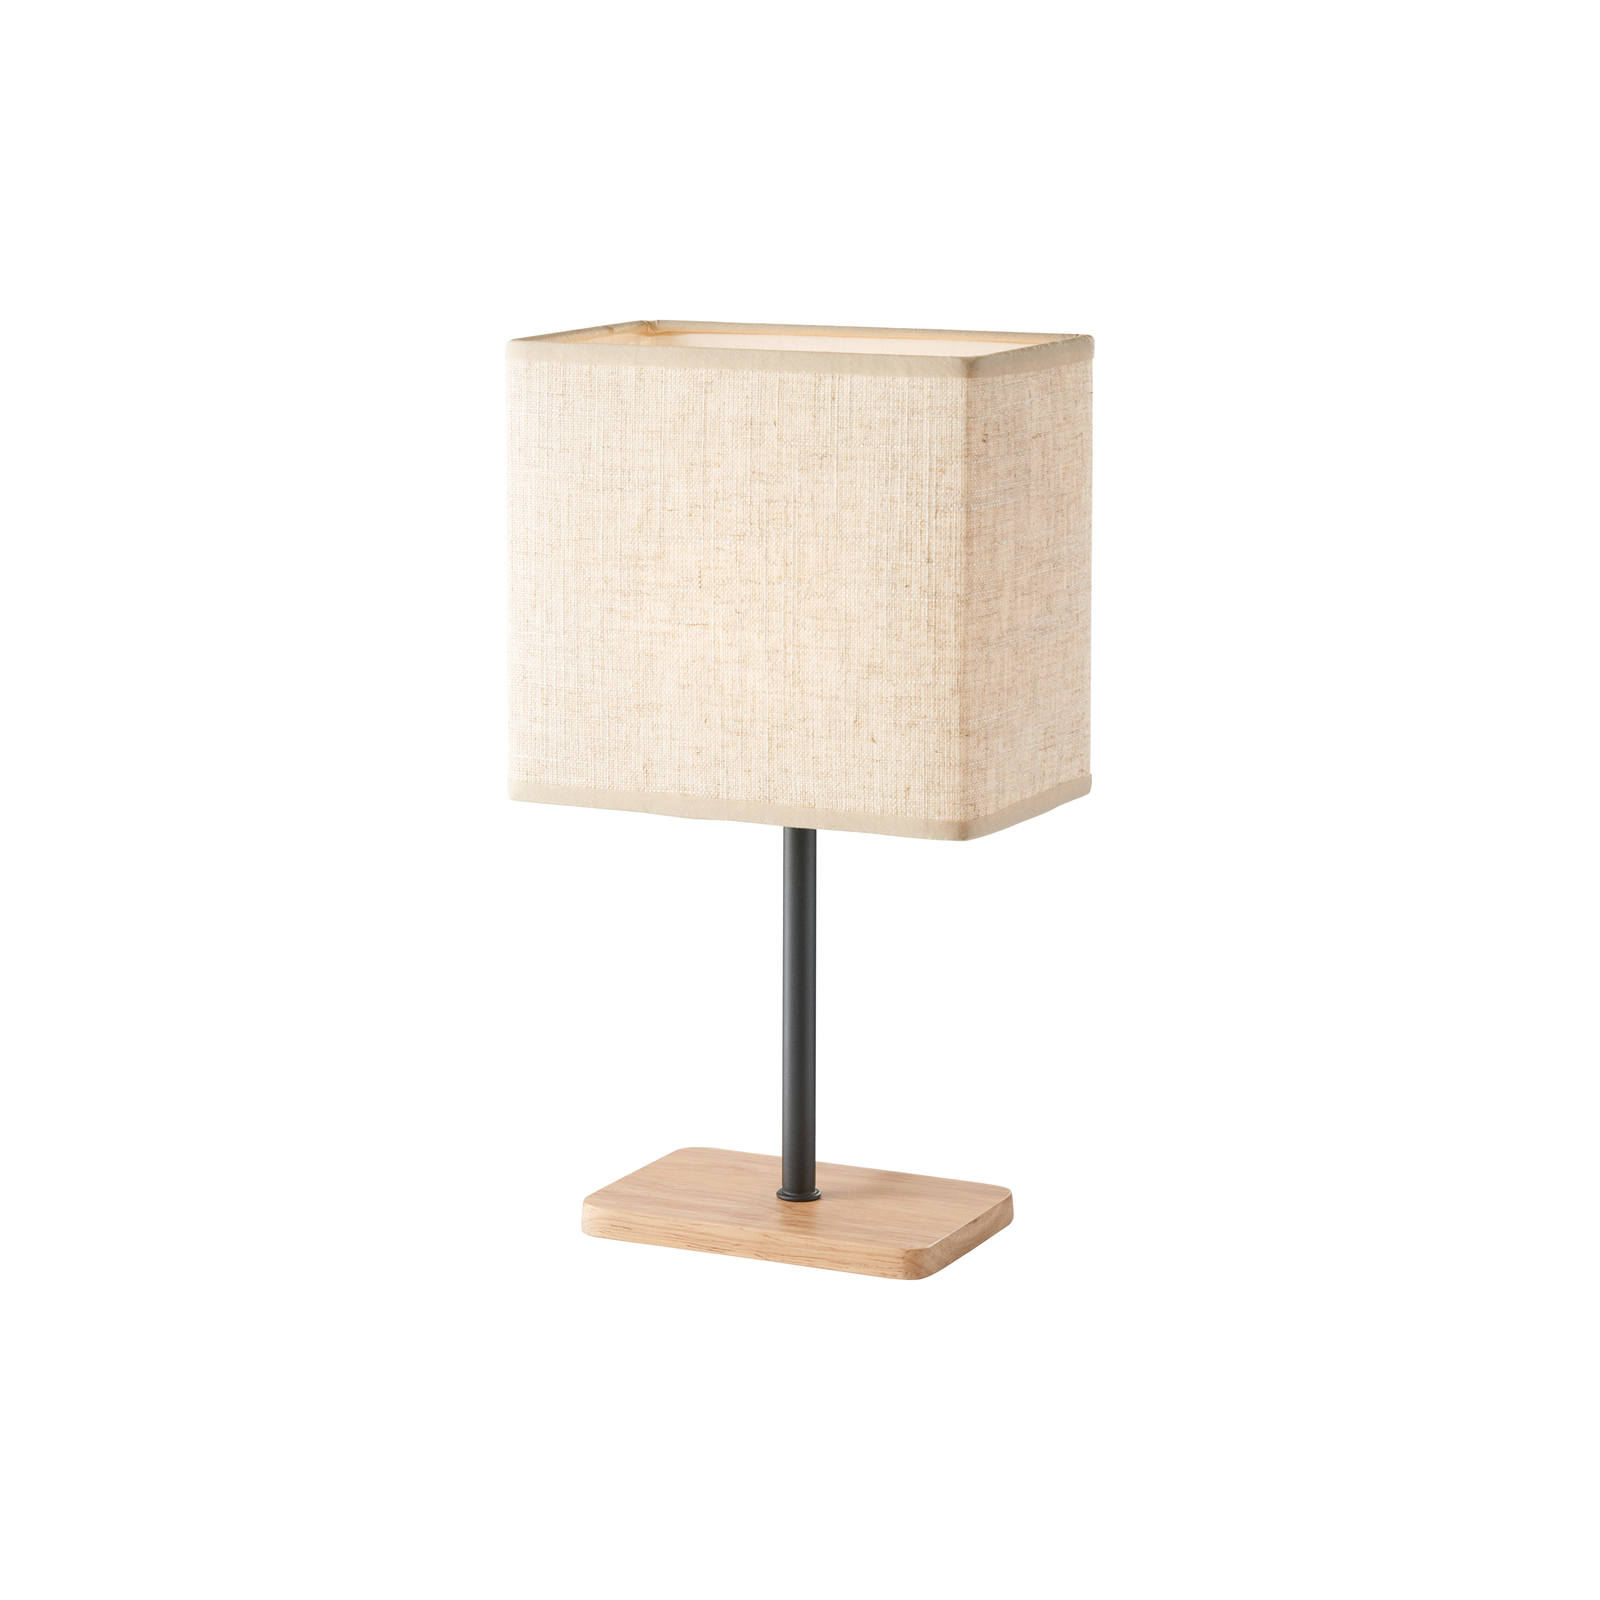 Kate table lamp, fabric lampshade, natural oak